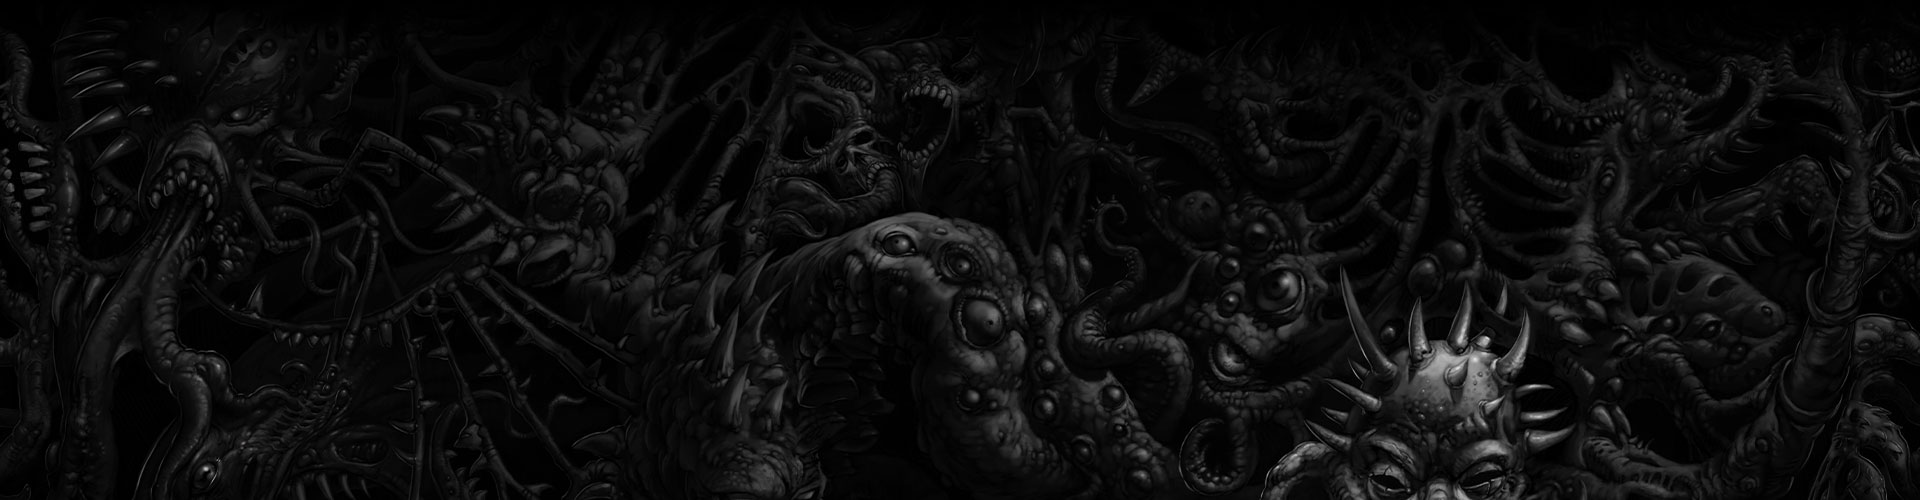 Een donkere muur van lichaamsdelen van monsters.